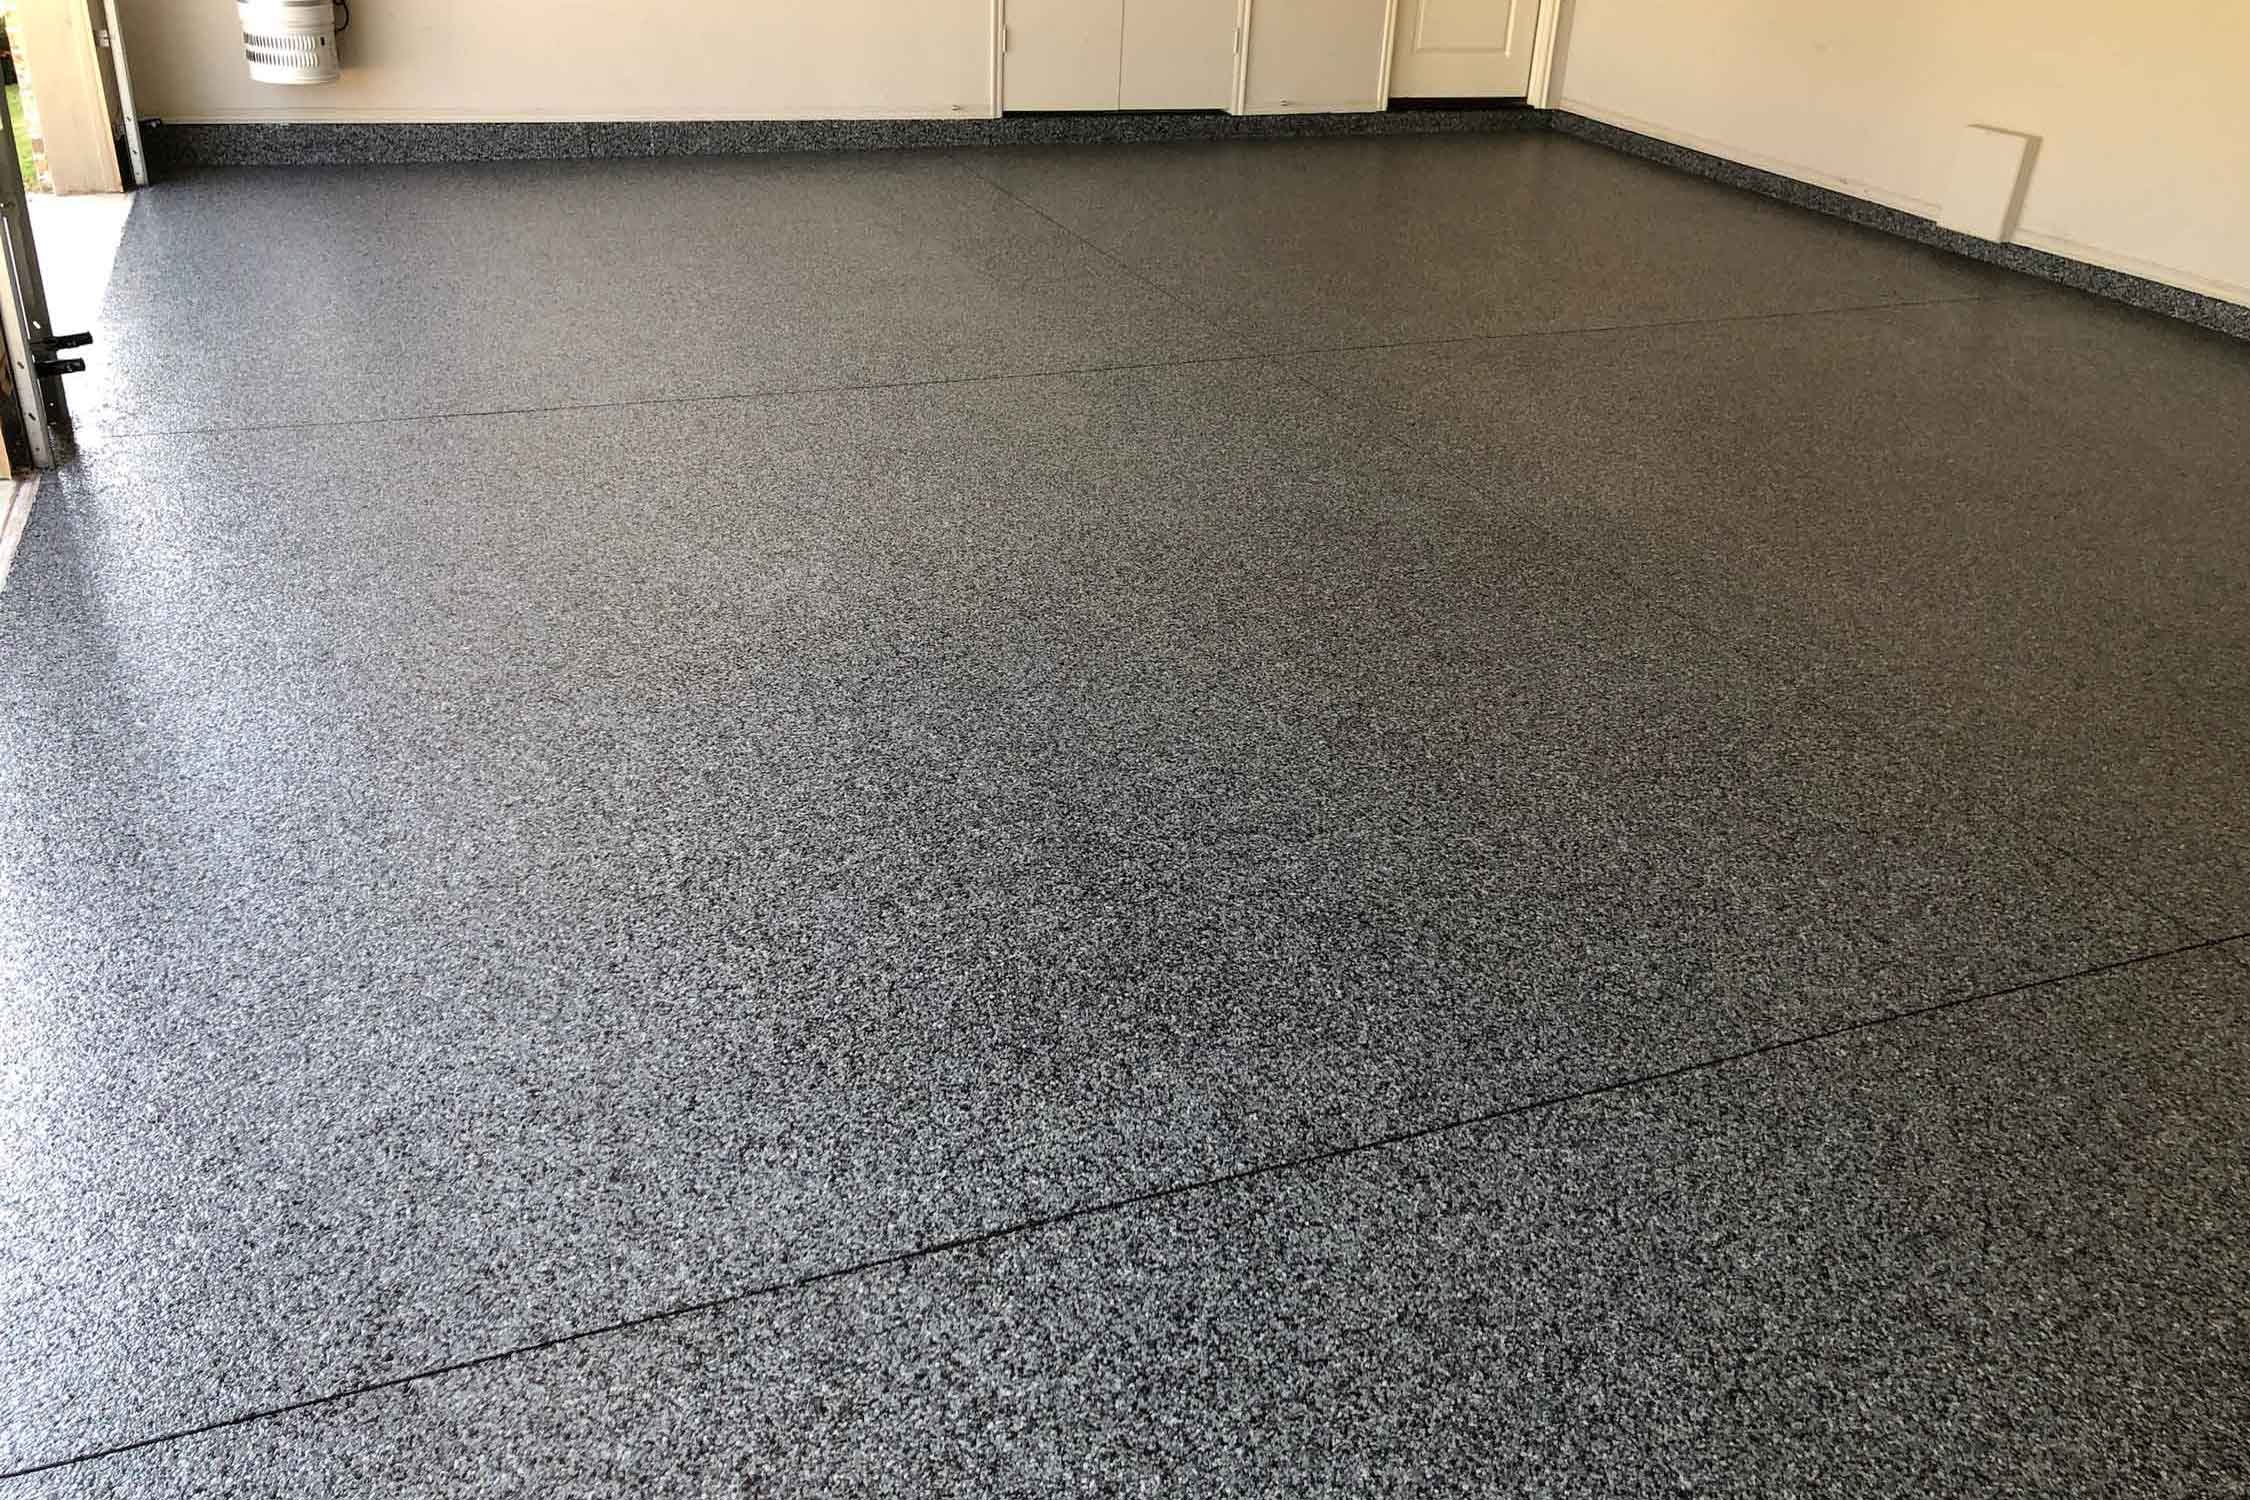  Dark gray epoxy garage floor.  